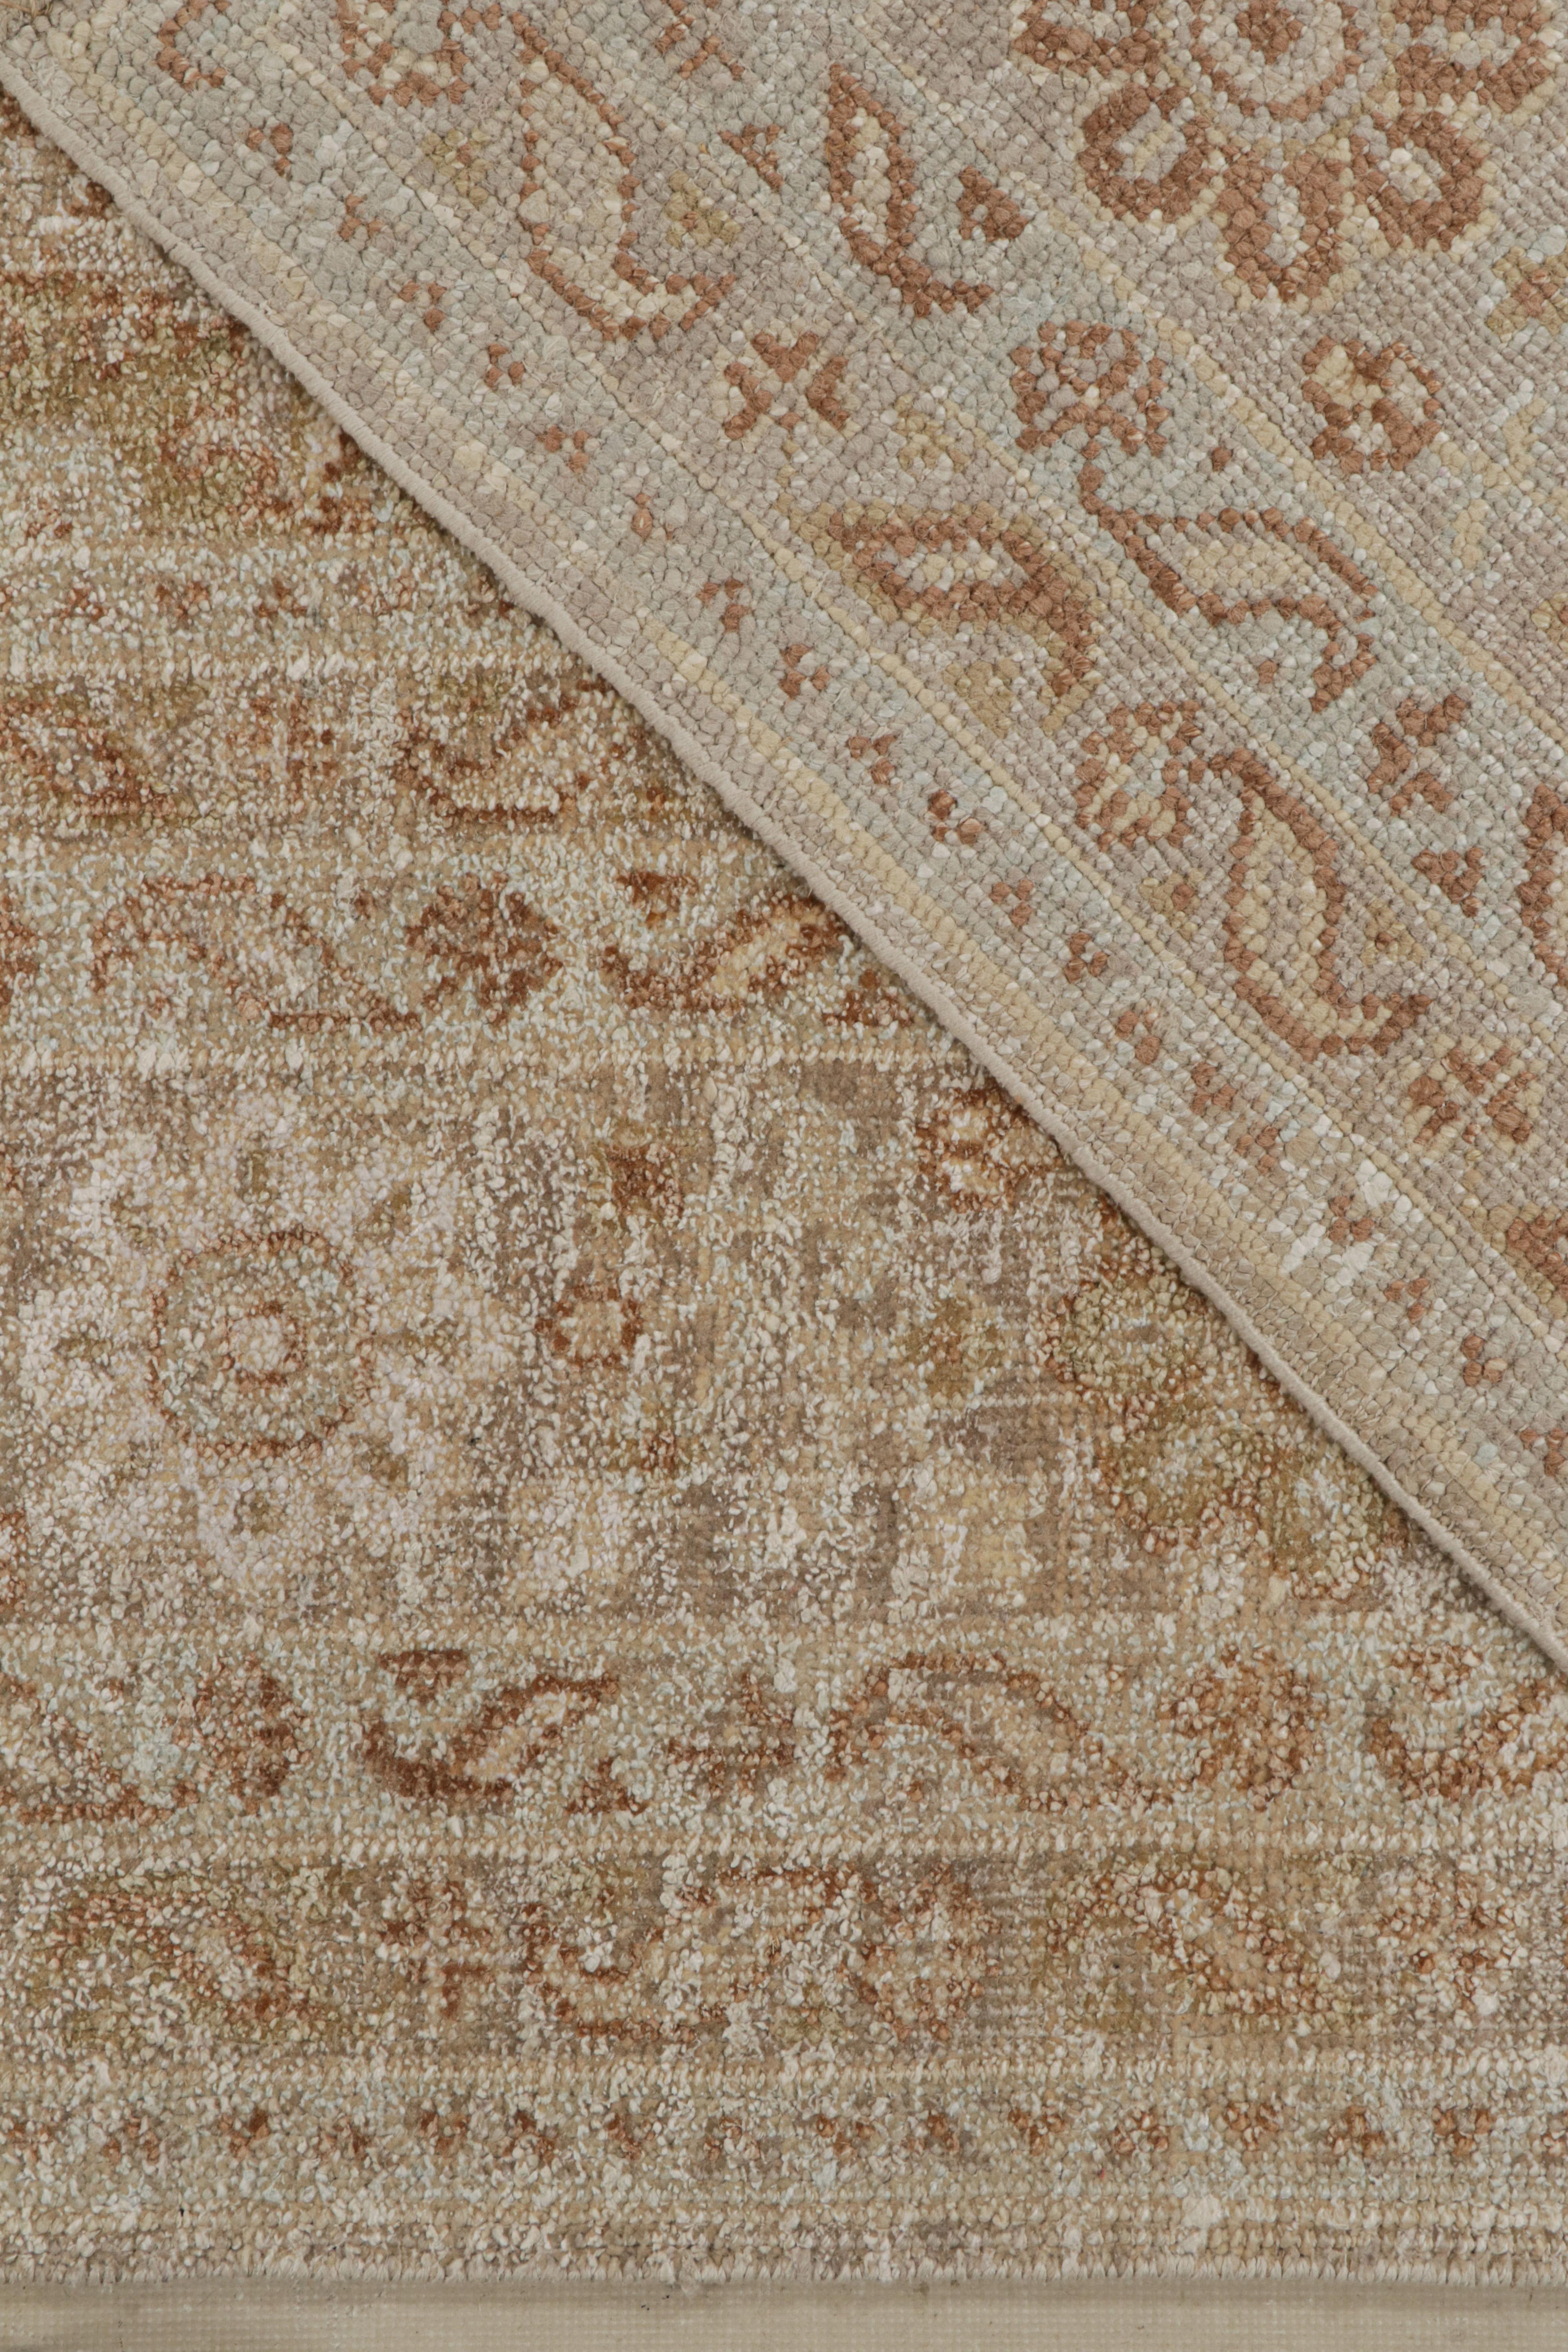 Rug & Kilim's Oushak Style Teppich in Beige-Braun & Weiß Geometrisch gemustert (Seide) im Angebot